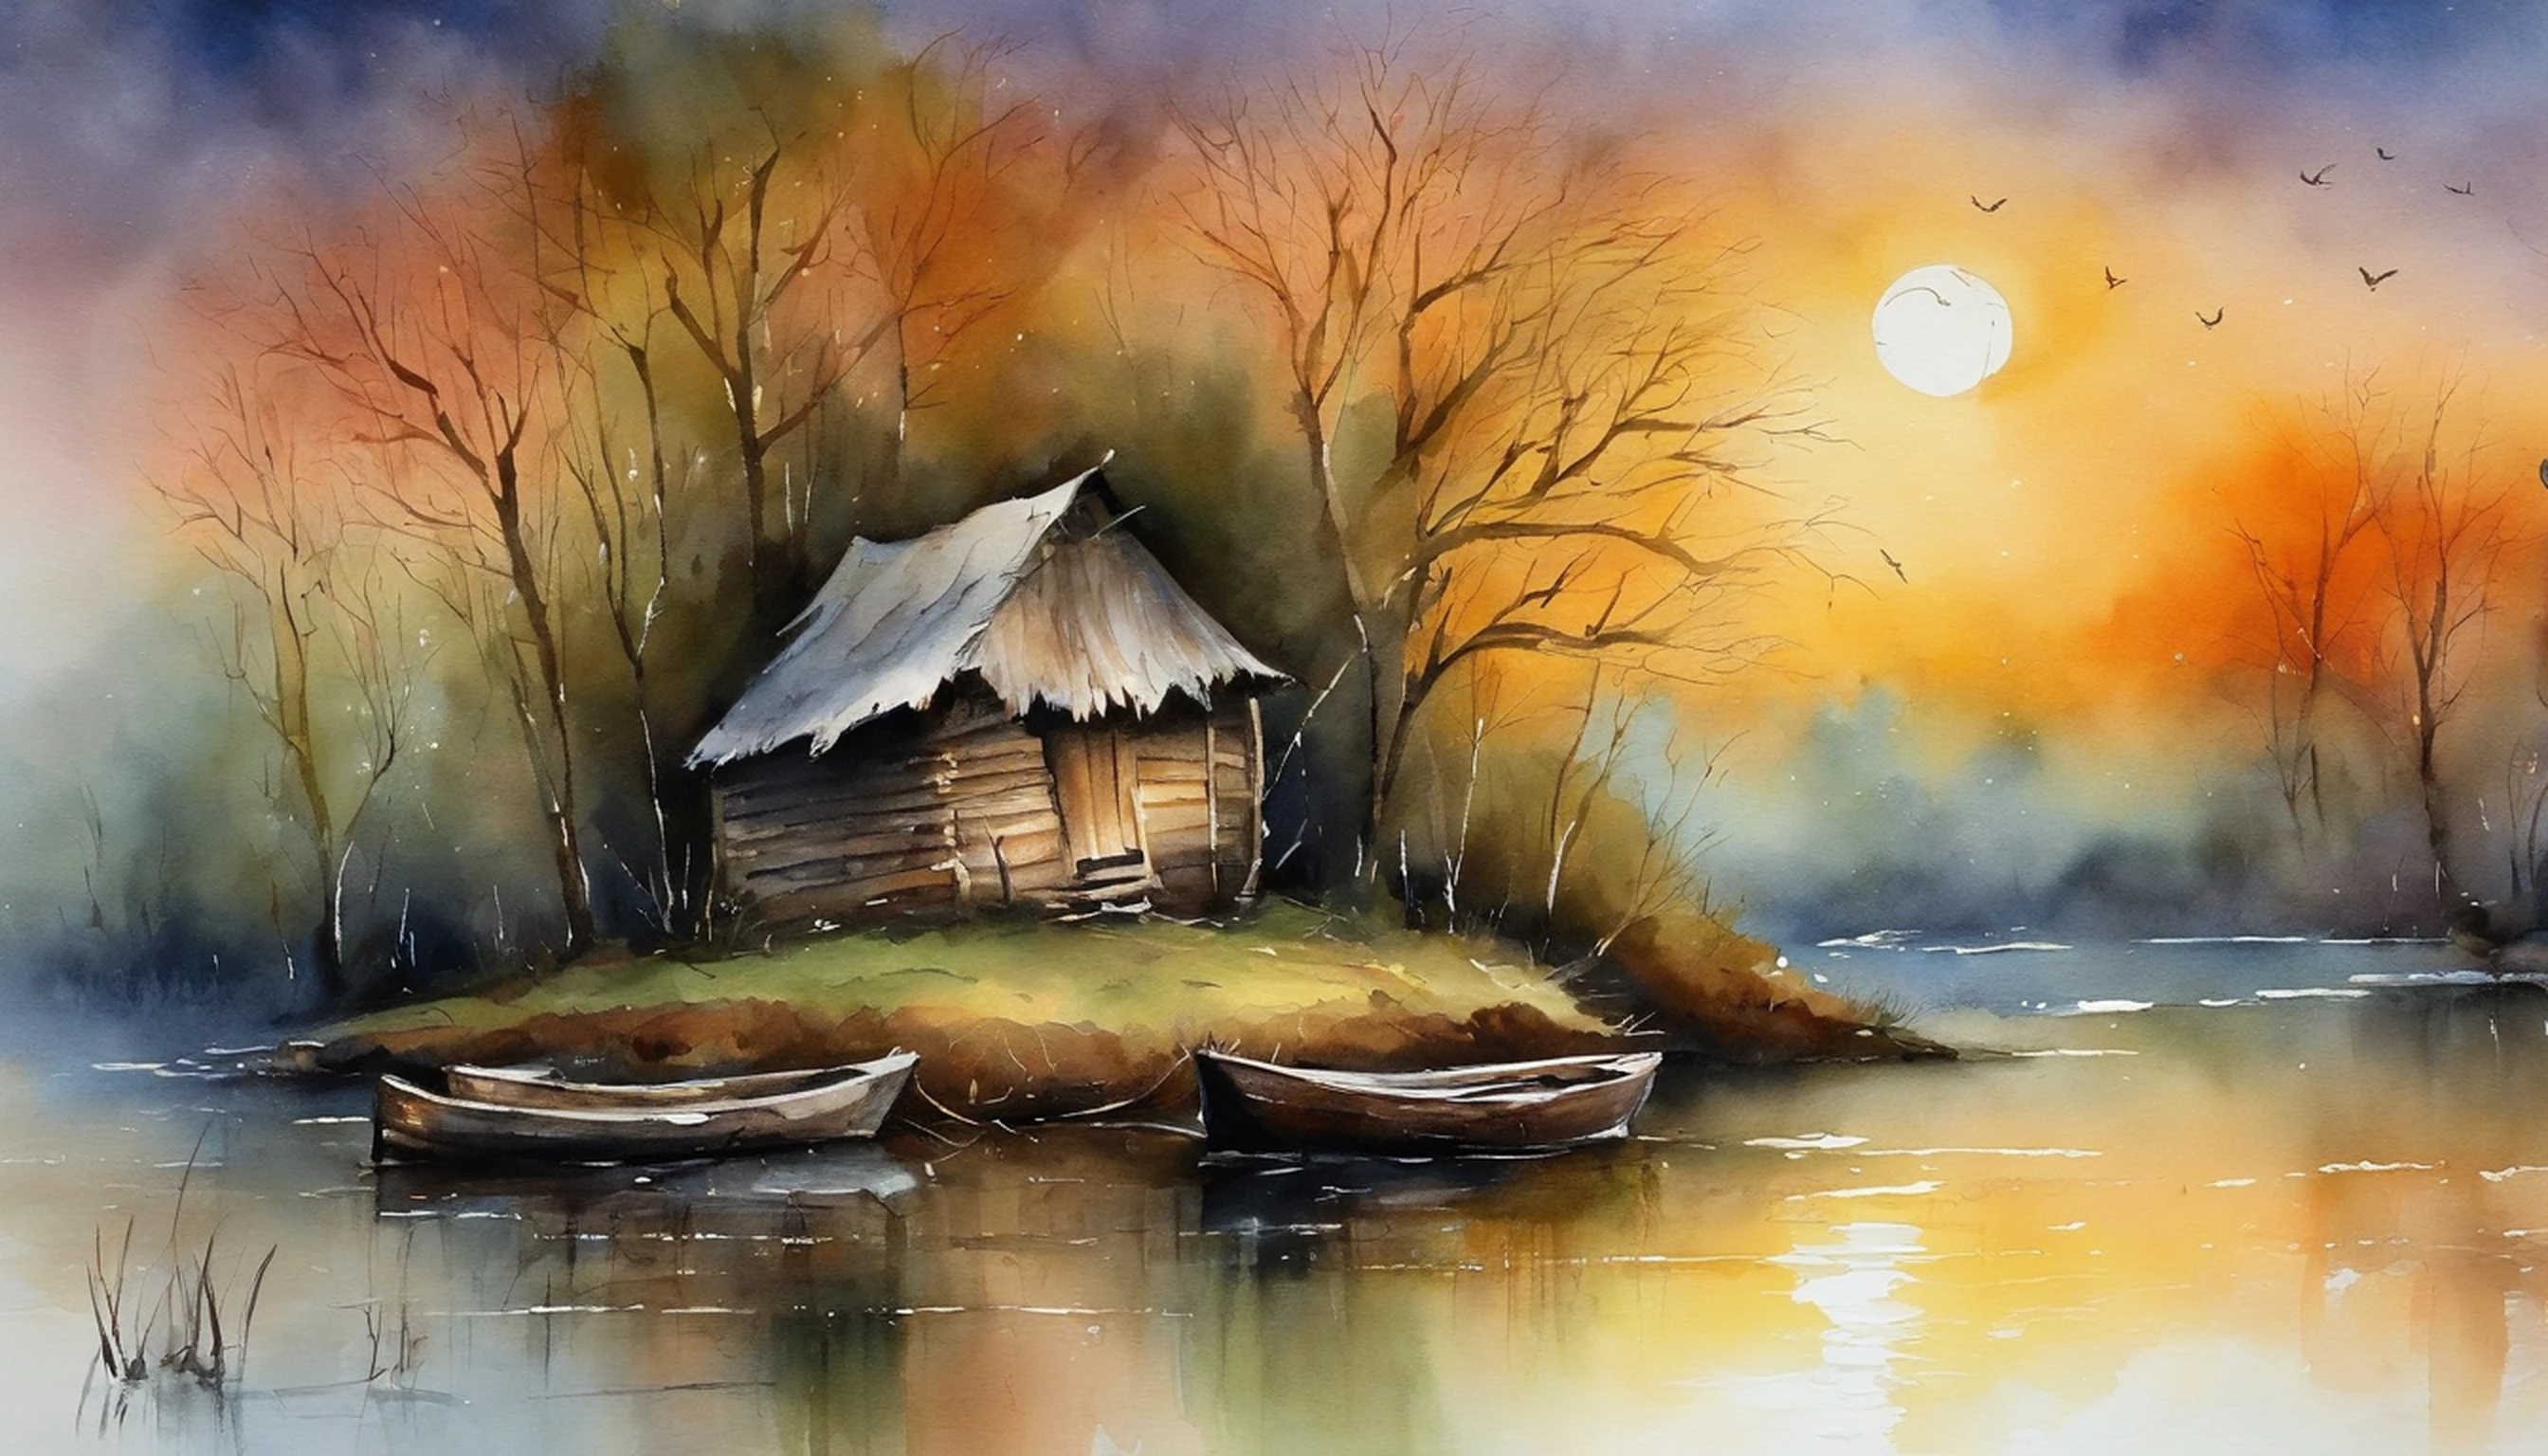 Es gibt eine alte Hütte neben dem Fluss, In der Dämmerung der Nacht, zwei kleine Boote sind am Flussufer zusammengebunden. Ein Baum beugt sich über das Ufer. Vollmondnachtszene.Meisterwerk Kunstwerk.